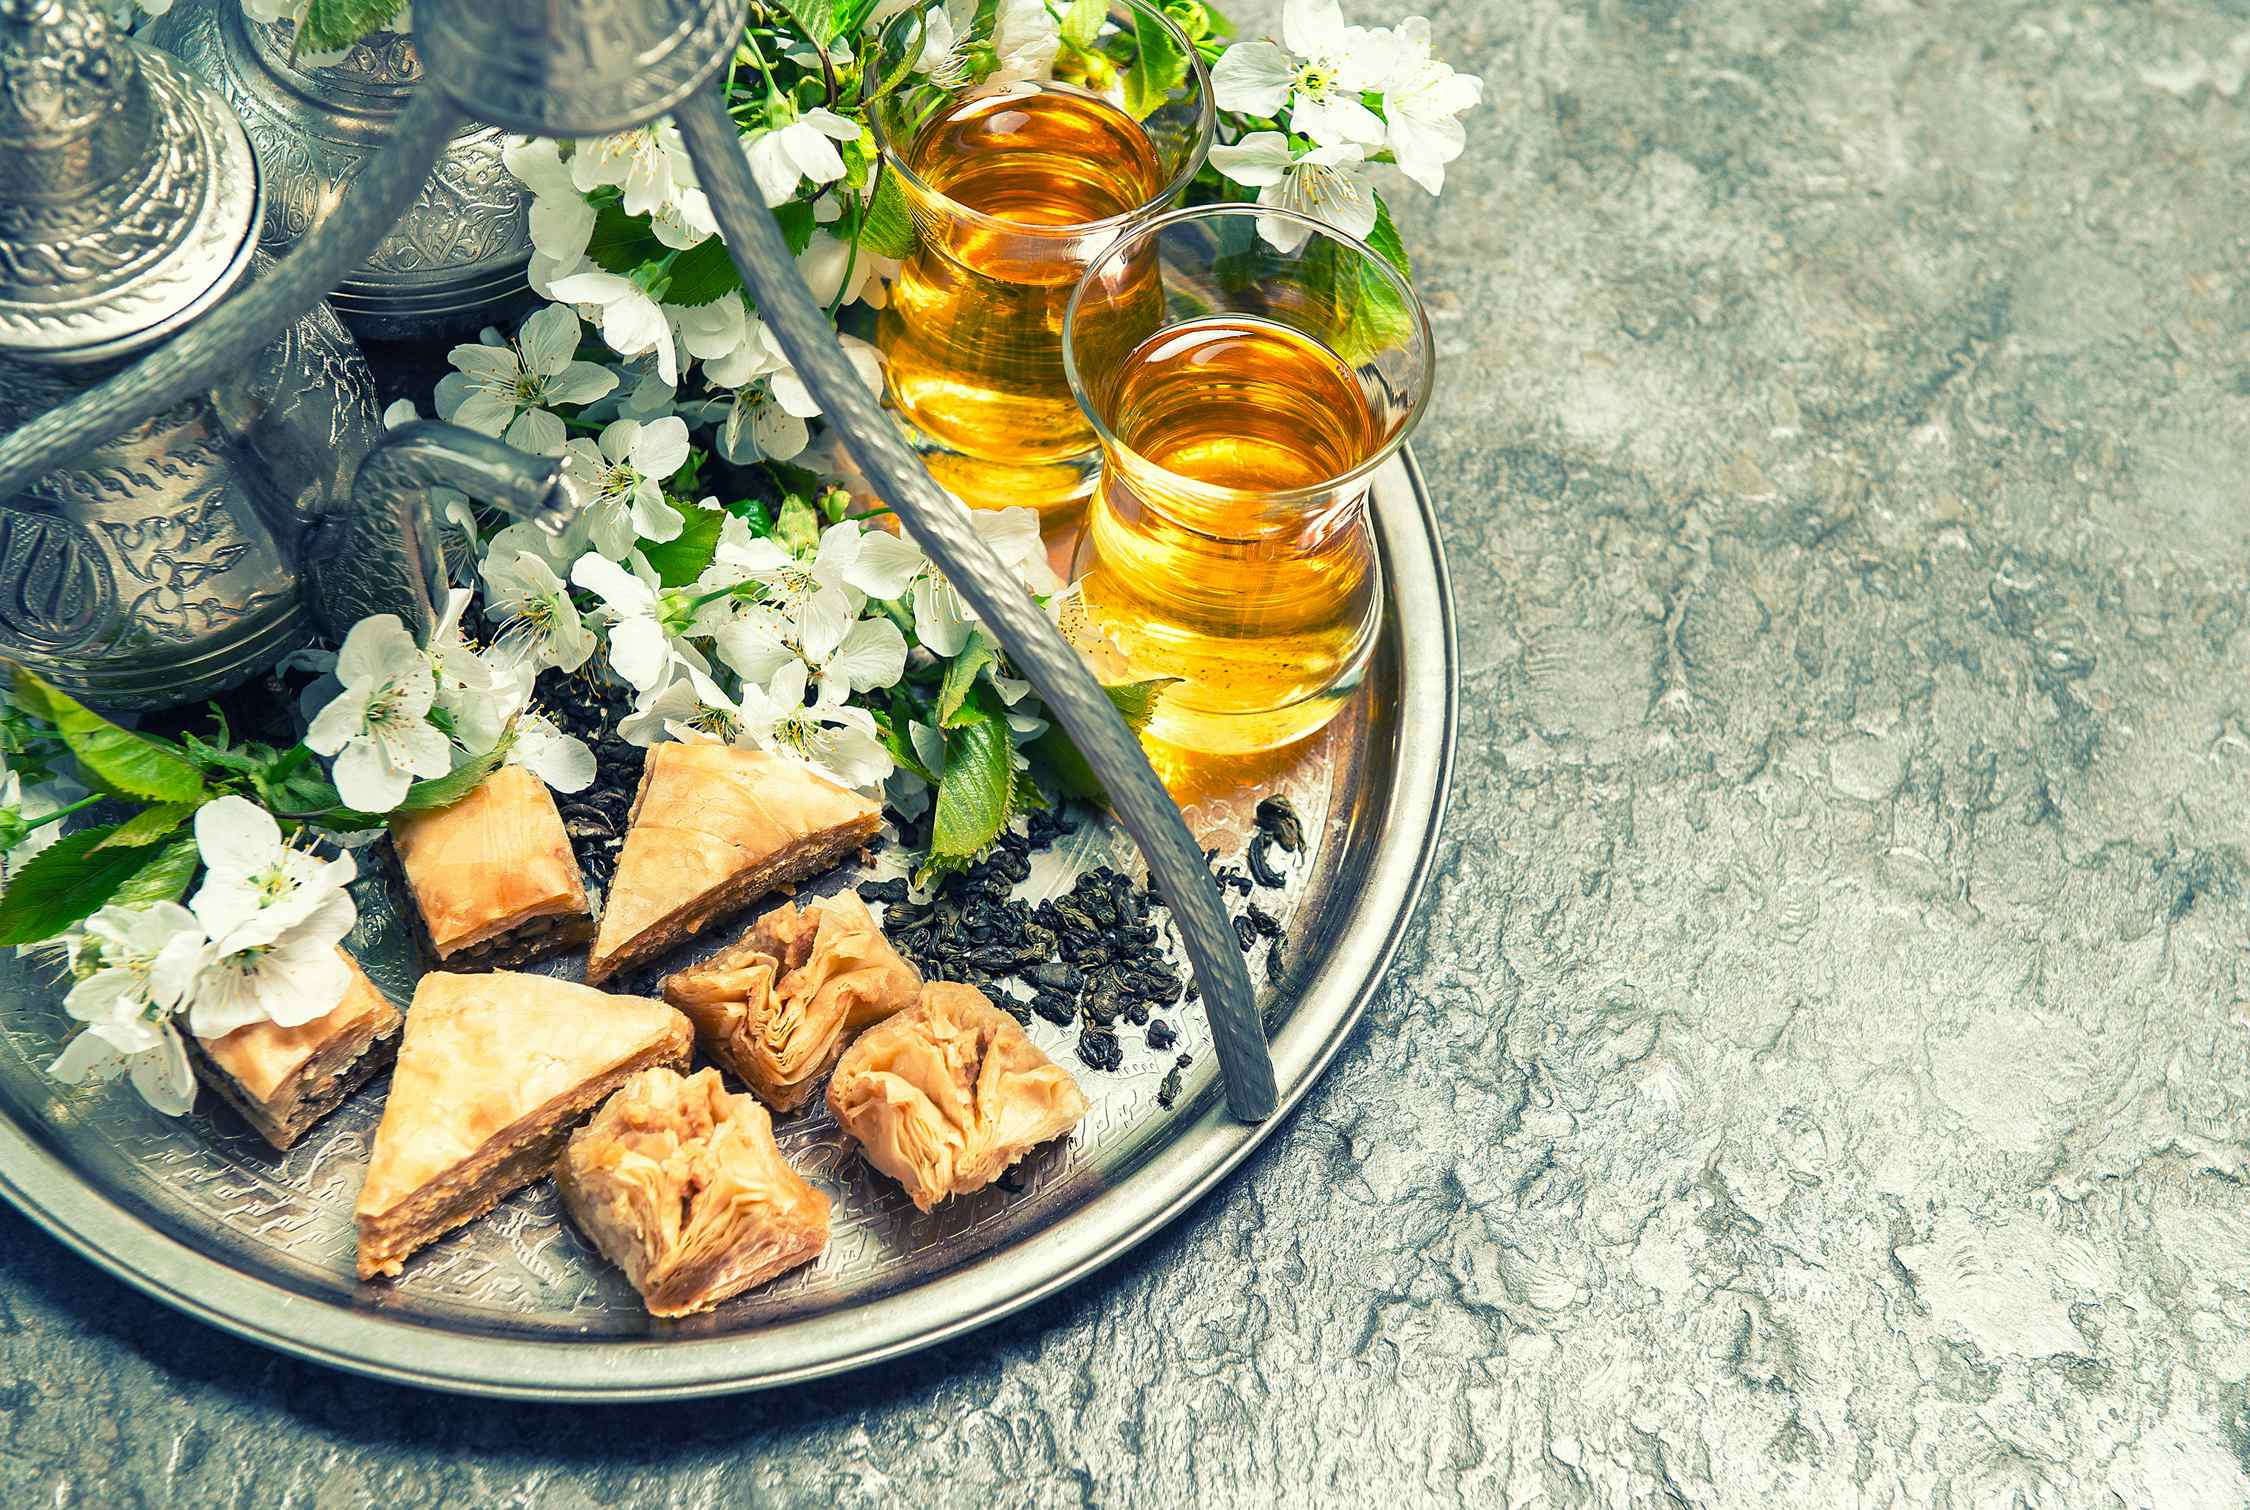 Plateau de pâtisseries marocaines et thé à la menthe par la cuisine de roukia à libourne